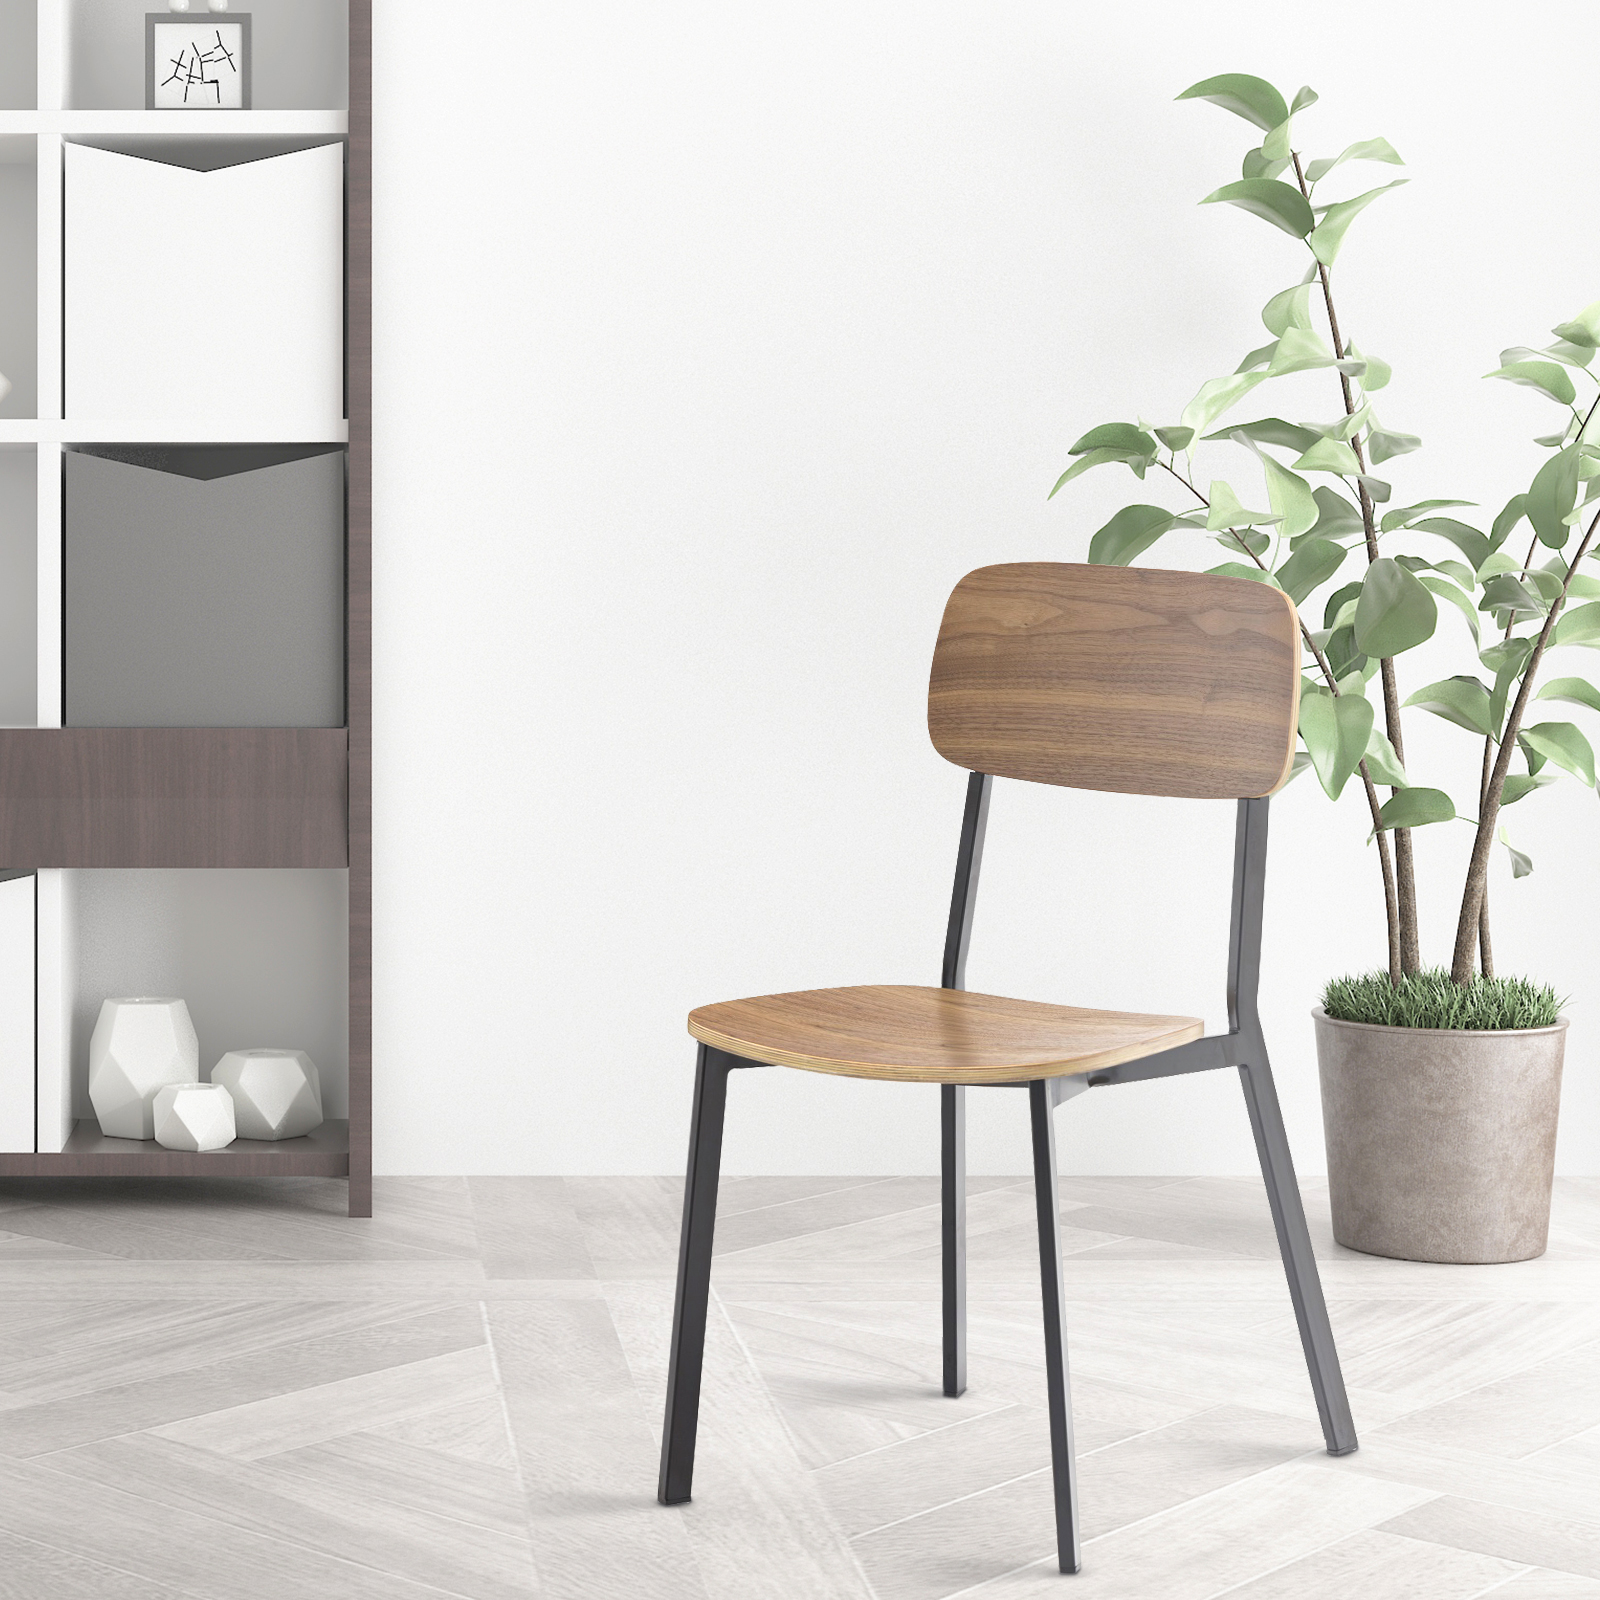 https://www.goldapplefurniture.com/stapelbare-metalen-stoel-met-plywood-zit-en-rug-ga3001c-45stw-product/